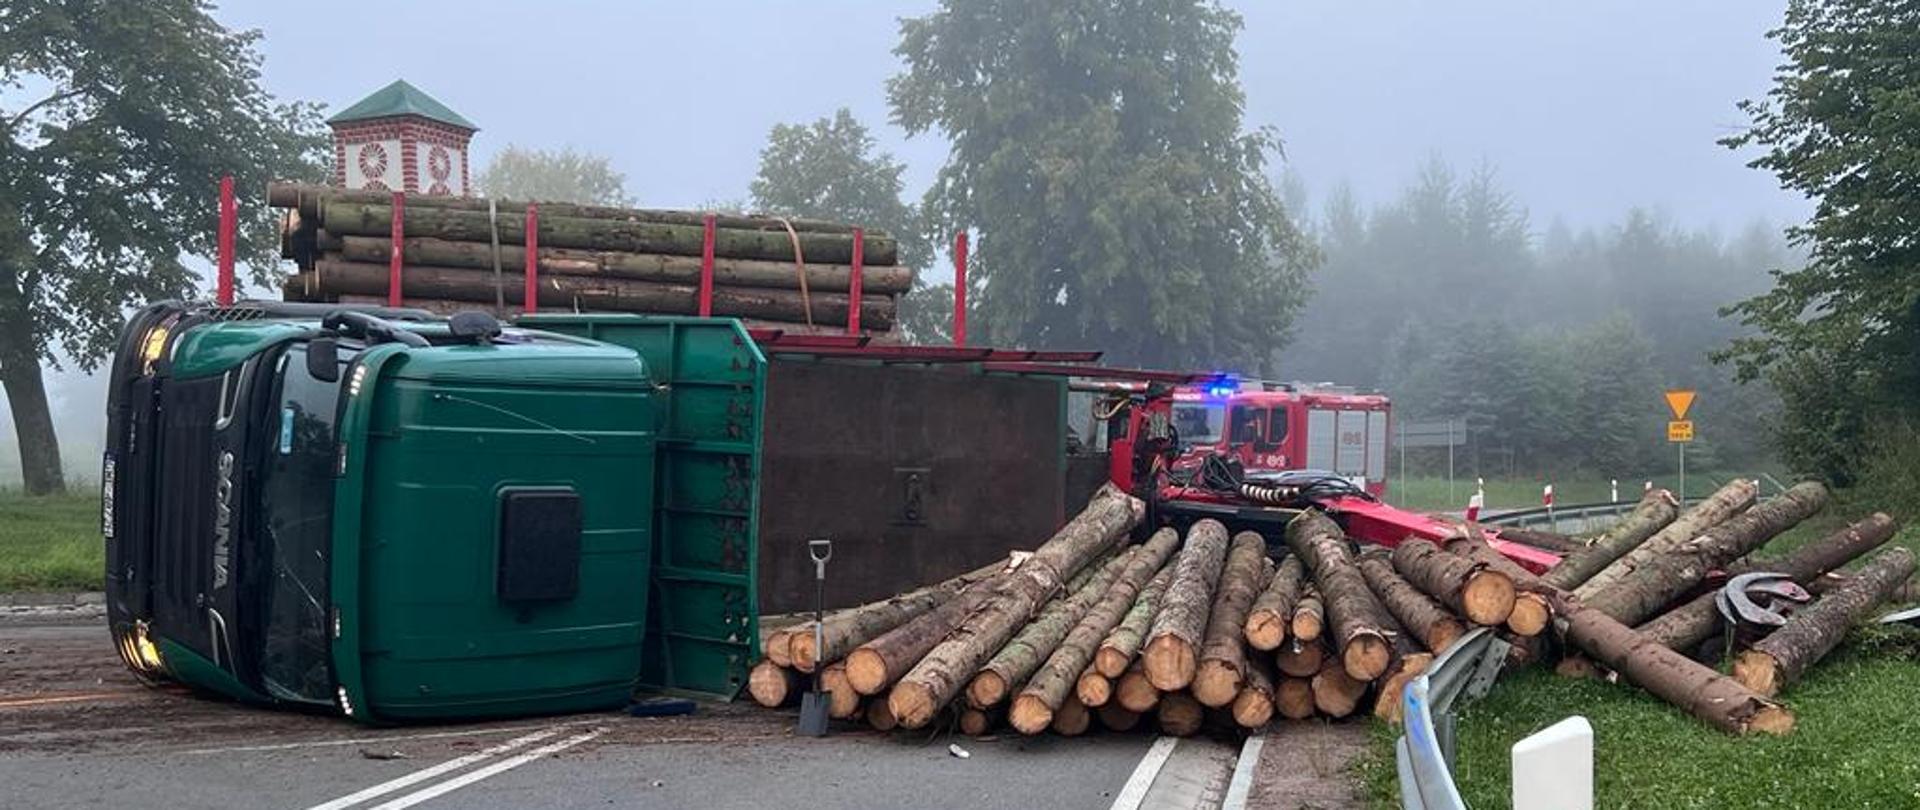 Na jezdni przewrócona ciężarówka przewożąca drzewo. Zielona kabina ciężarówki. Z prawej strony rozrzucone przewożone drzewo. Mgła, w oddali samochody strażackie, zielone drzewa.